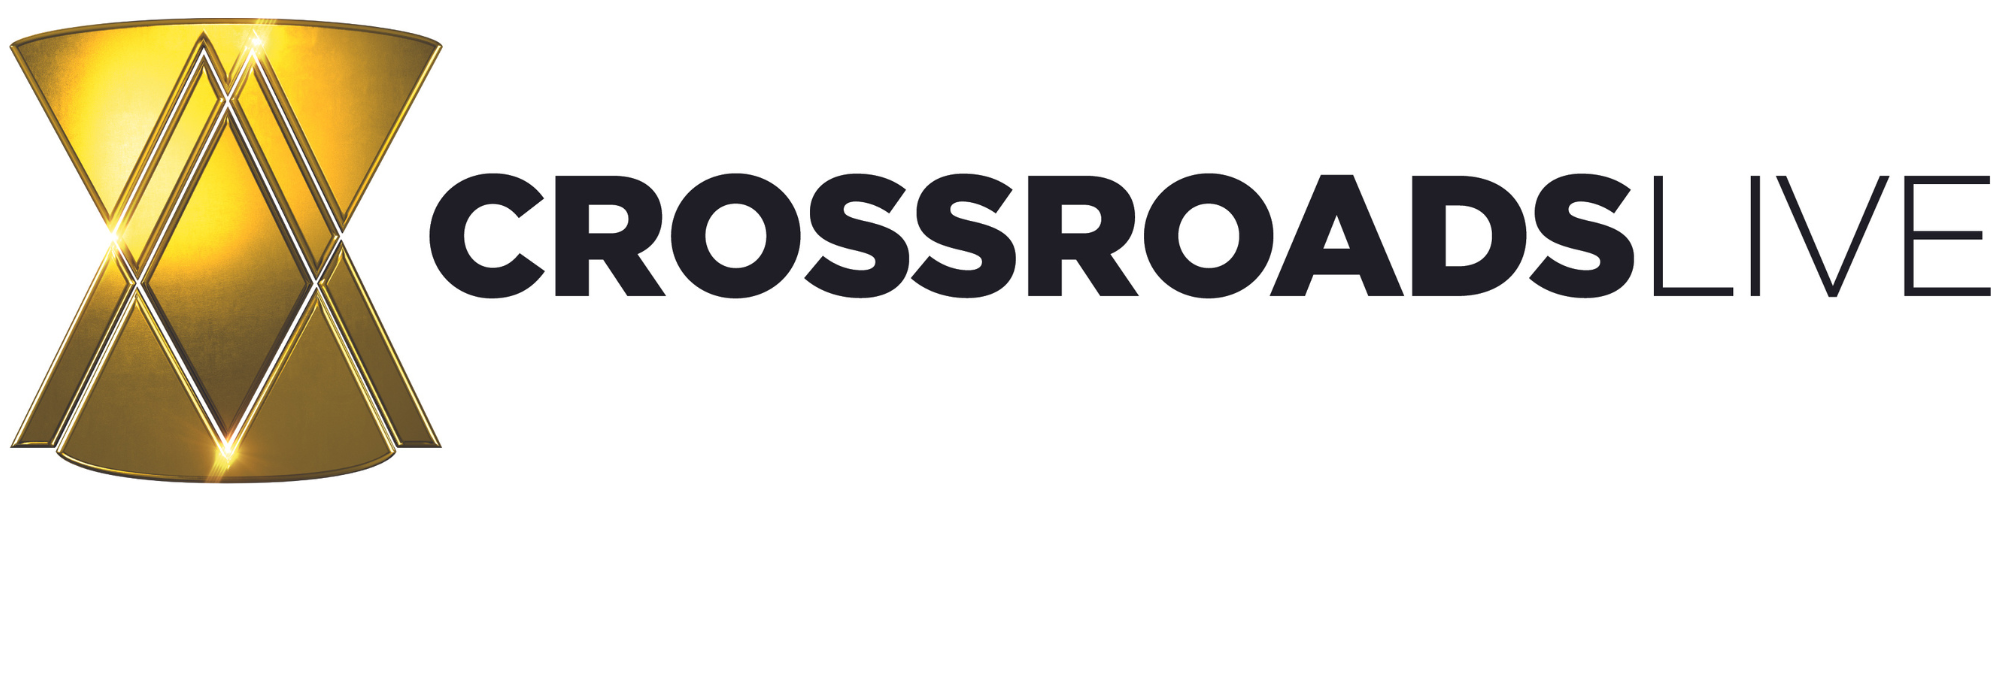 Crossroads Live